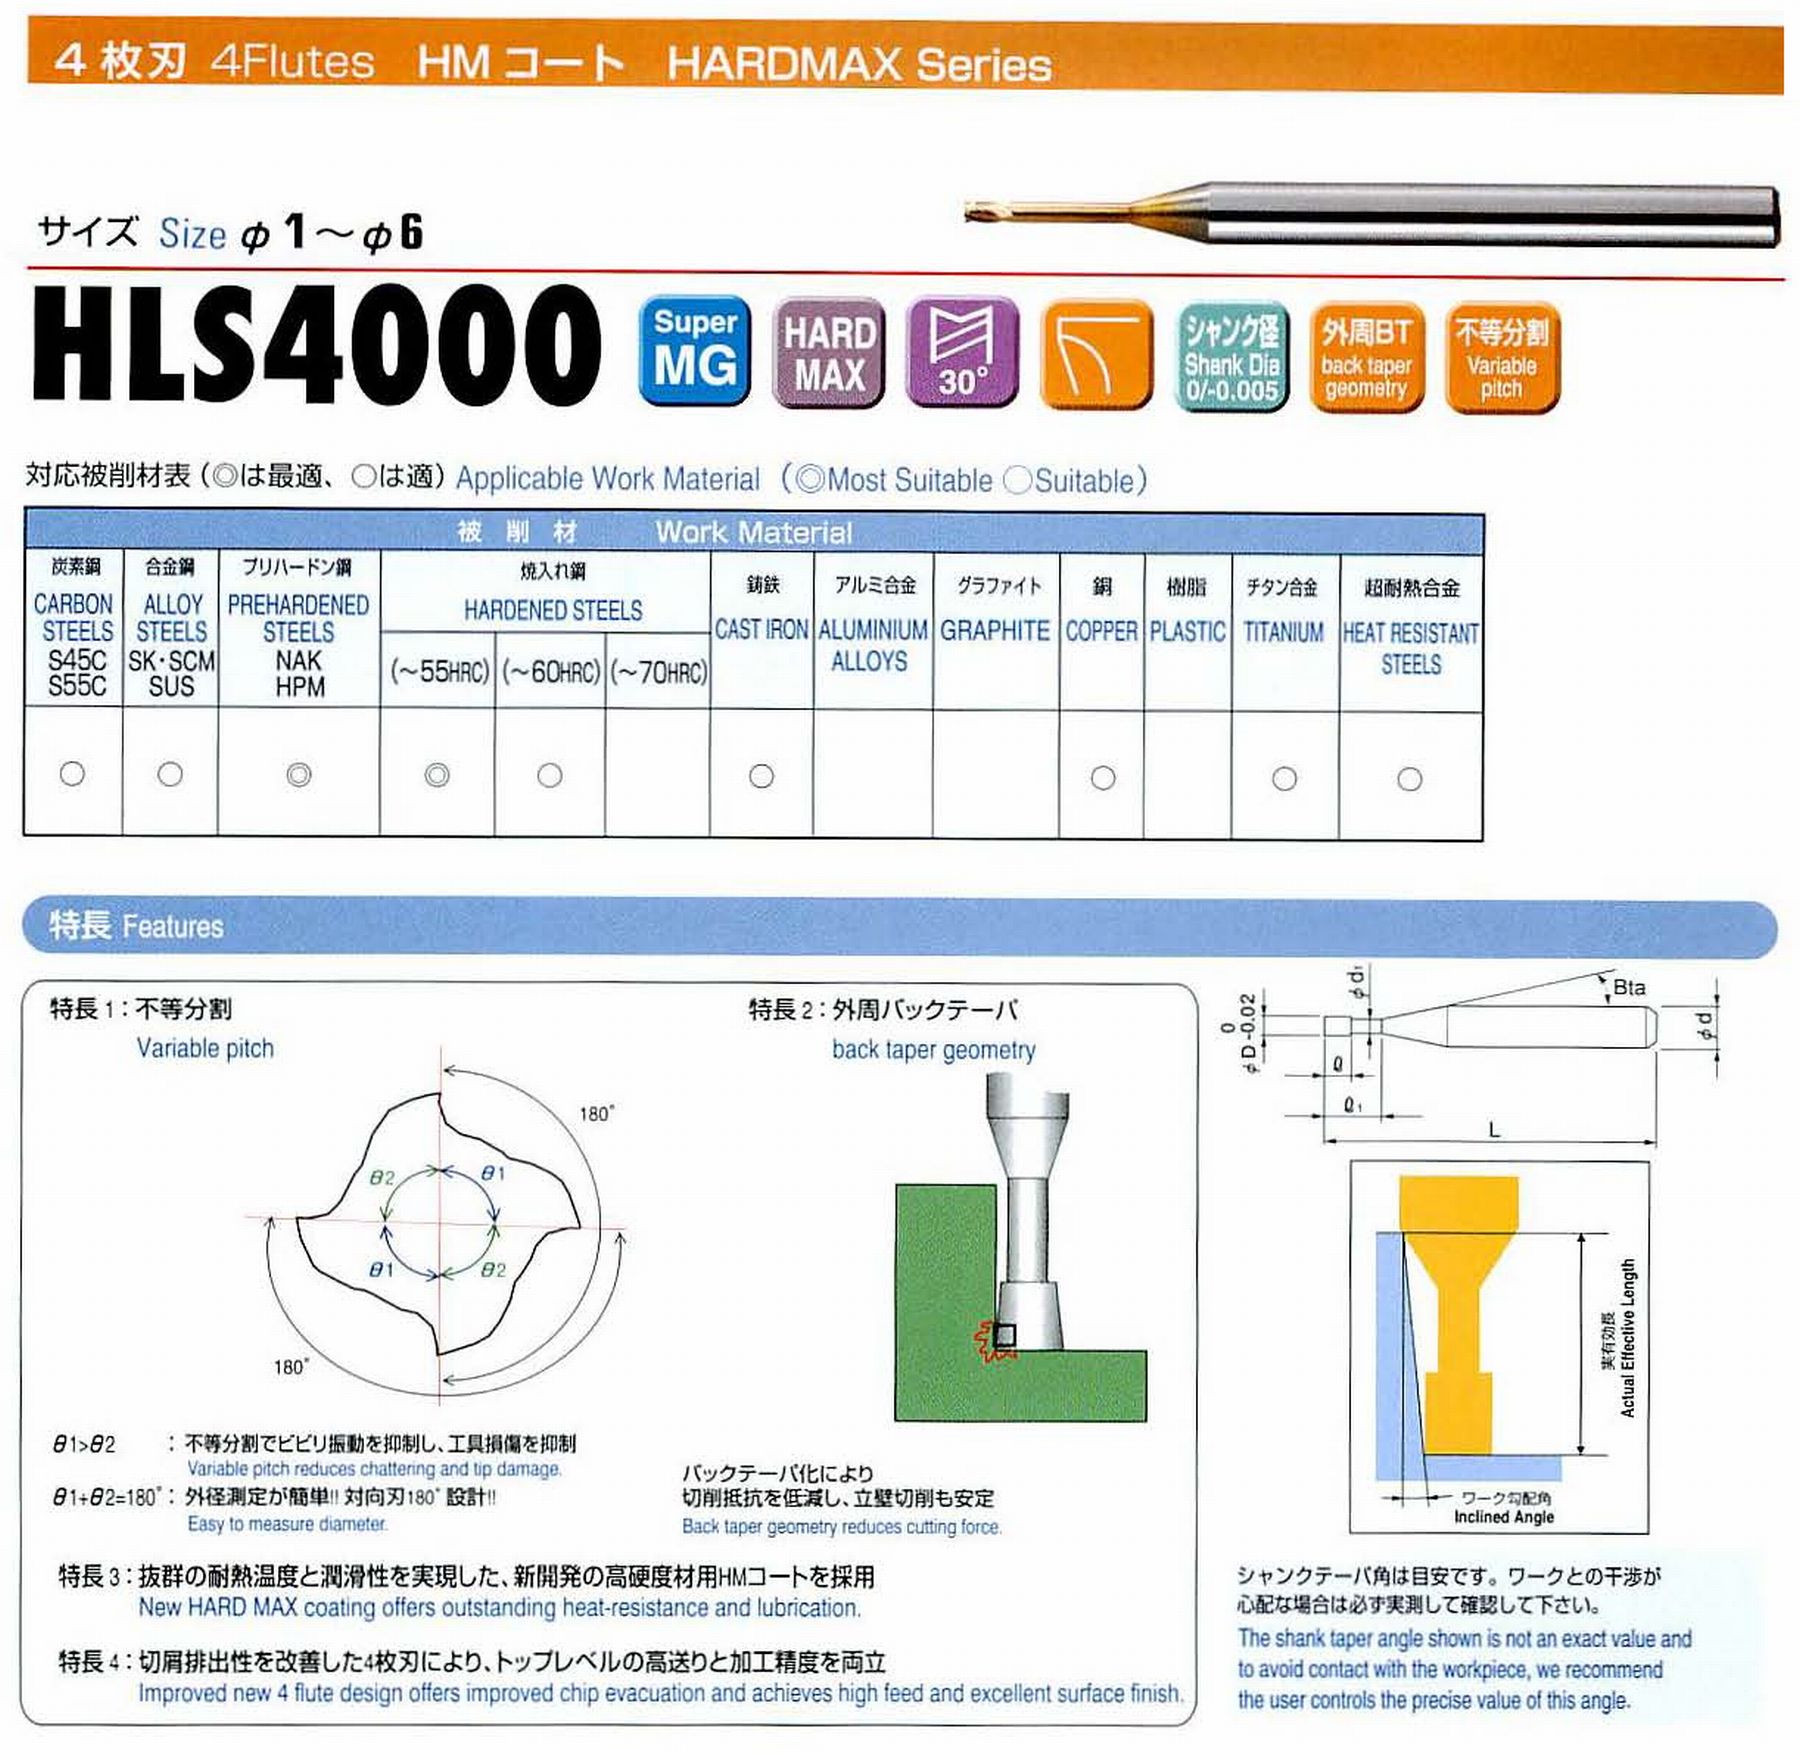 ユニオンツール 4枚刃 HLS4018-160 外径1.8 有効長16 刃長1.8 首径1.71 シャンクテーパ角16° 全長60 シャンク径4